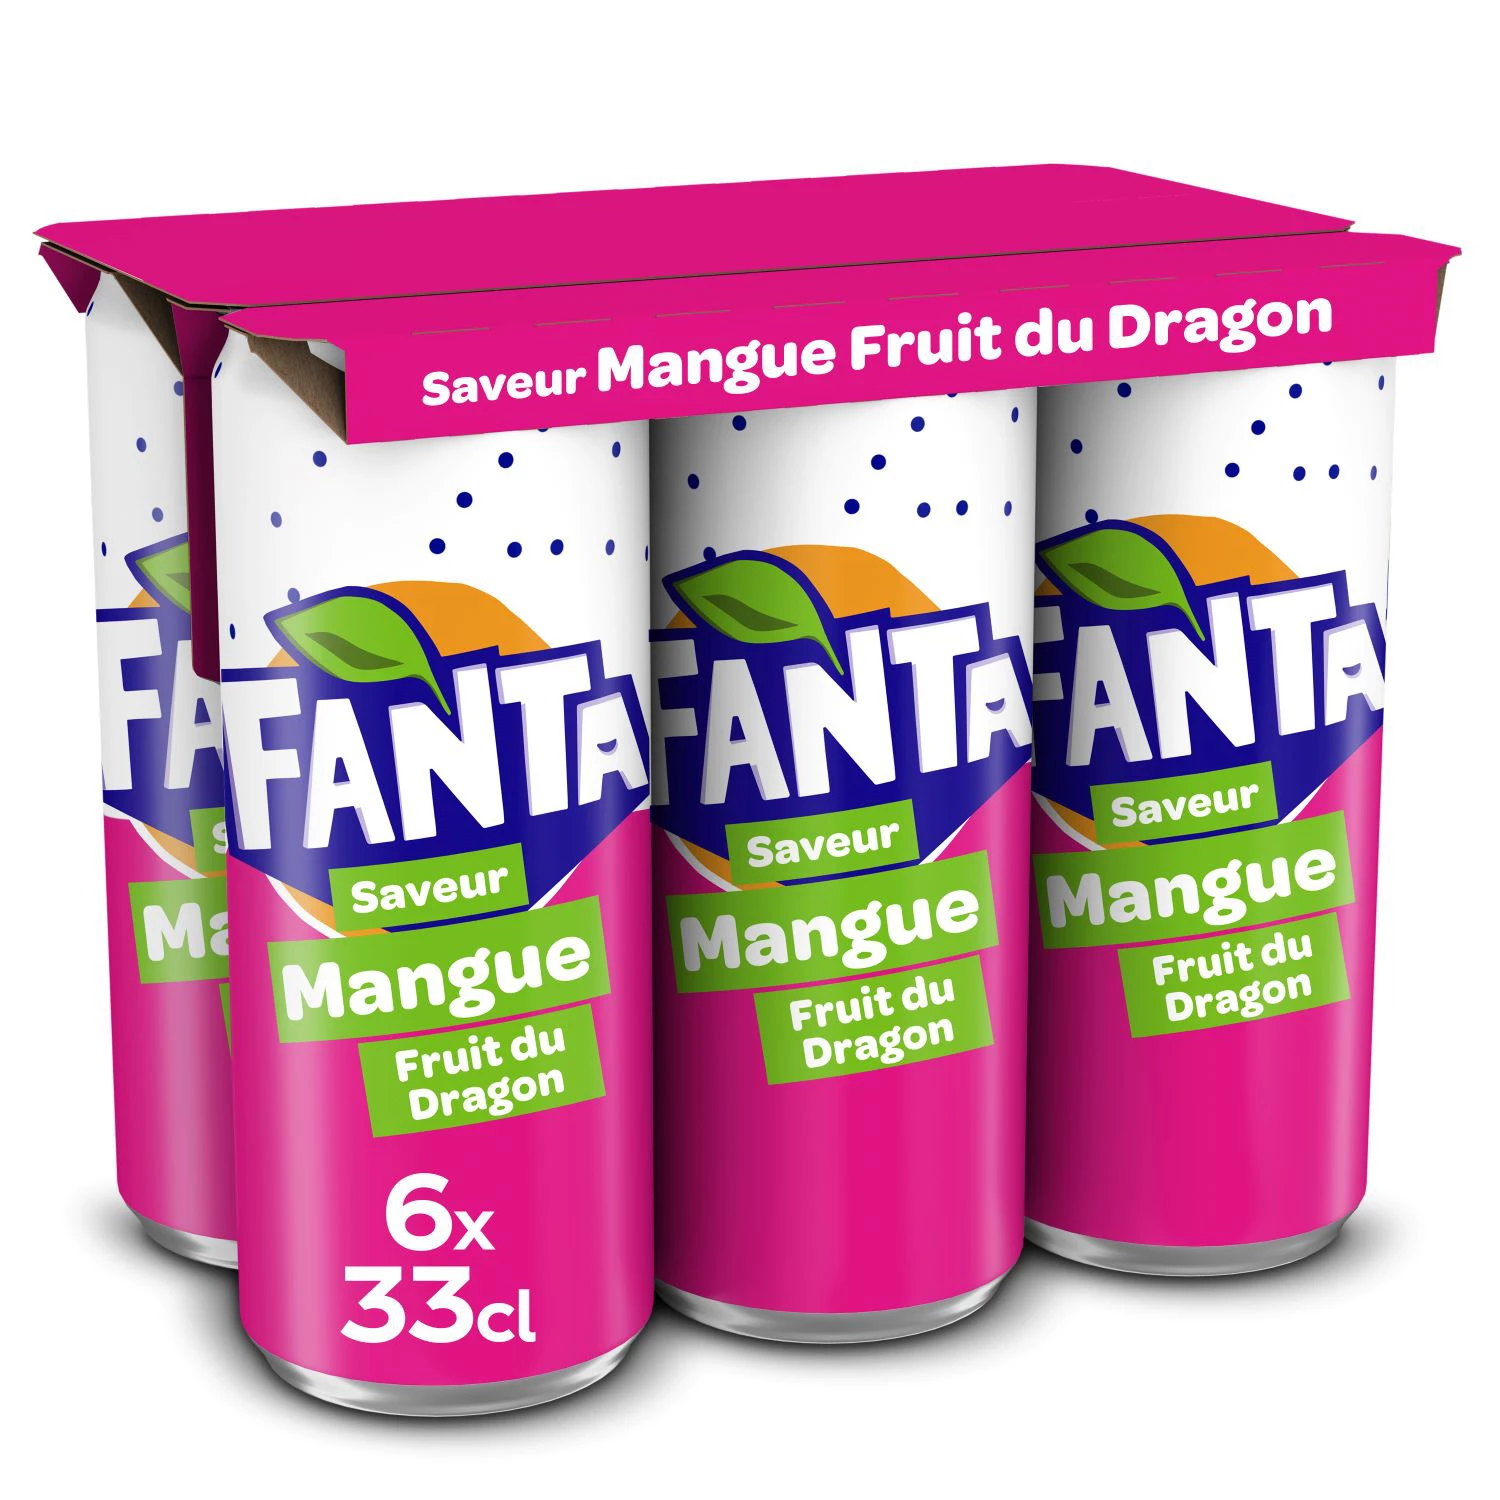 Fanta Mango Frt Dragon 6x33cl